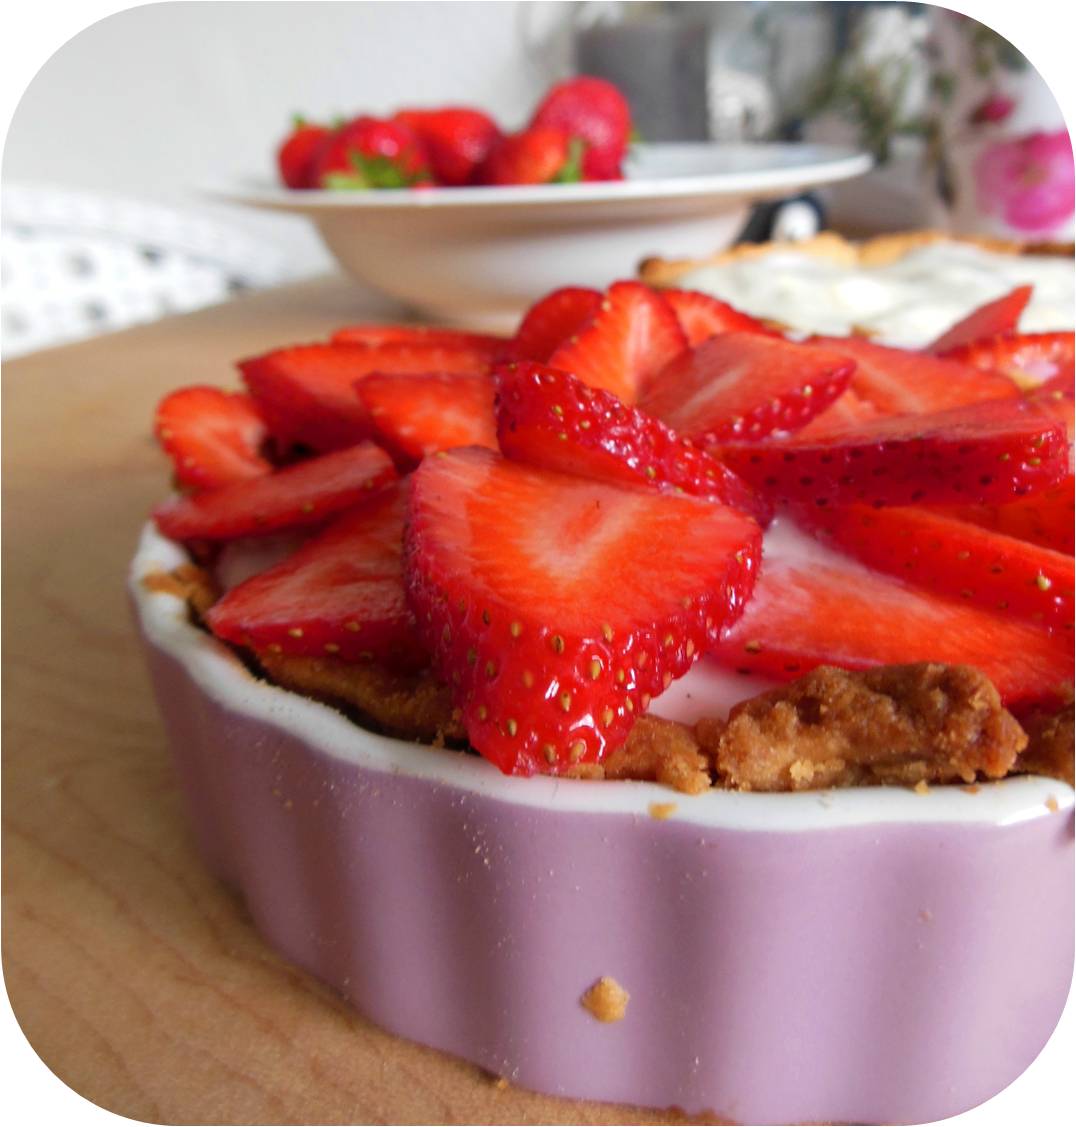 Kulinarikus: Kleine Rhabarber-Vanille-Törtchen mit Erdbeeren